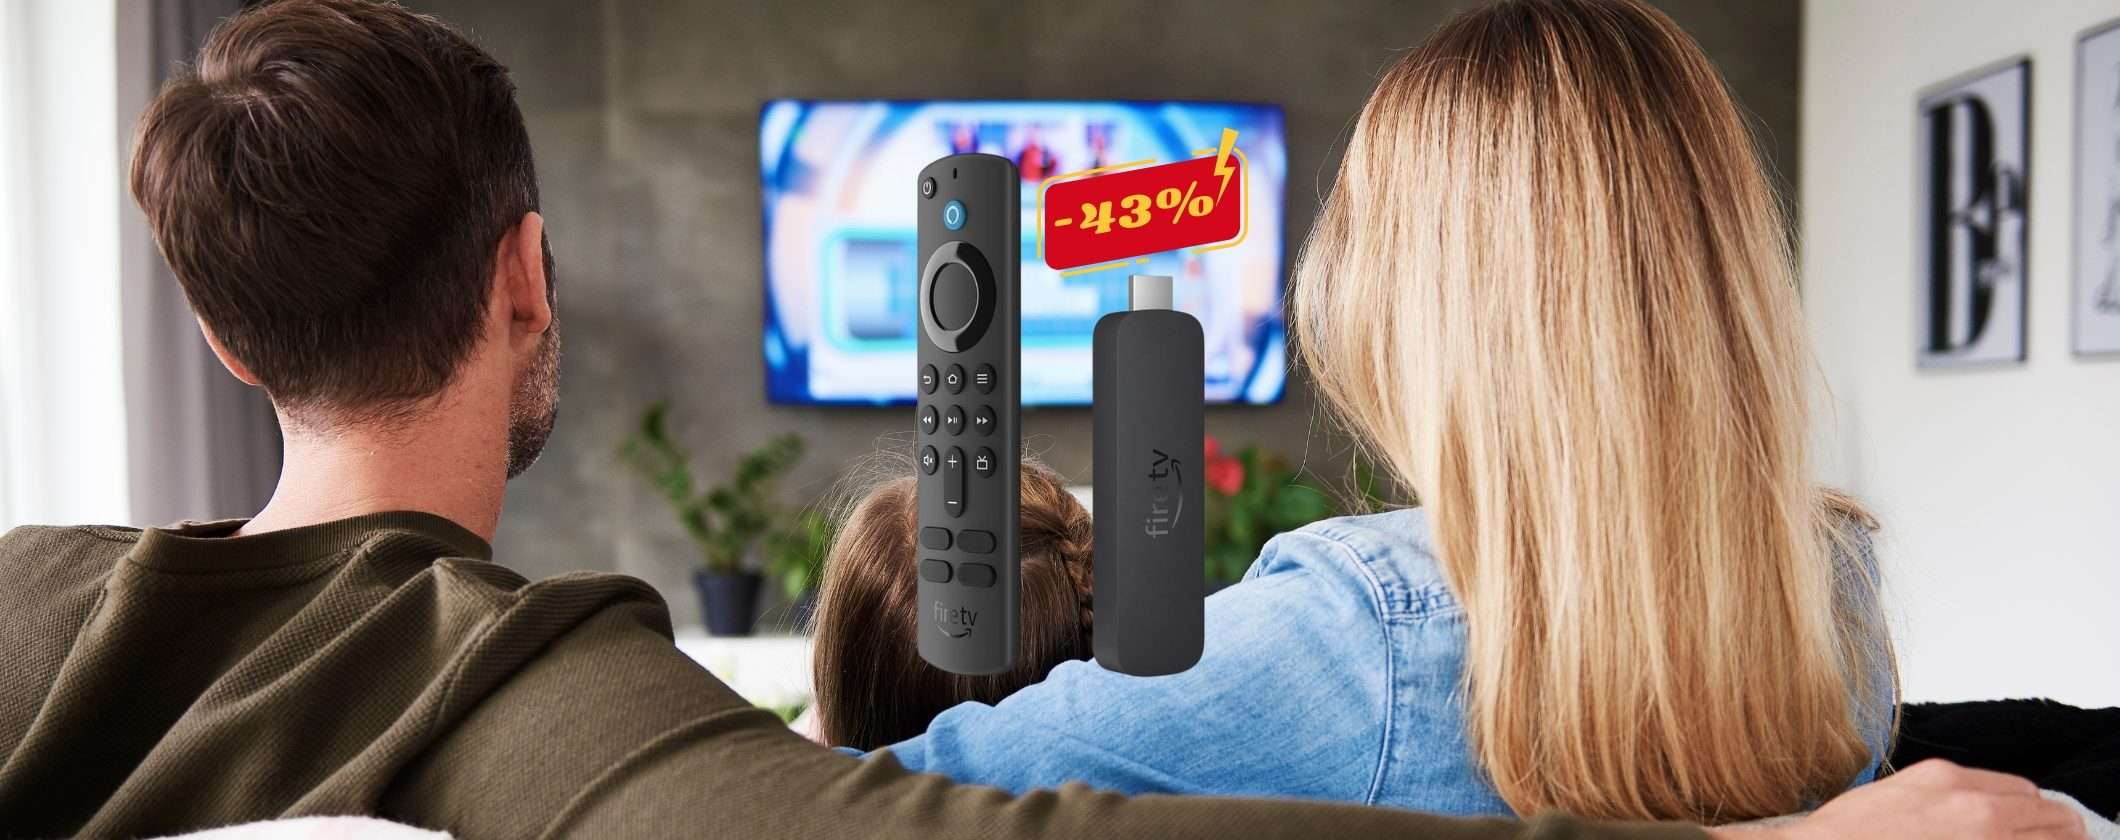 Fire TV Stick 4K: il nuovo modello al 43% di SCONTO su Amazon